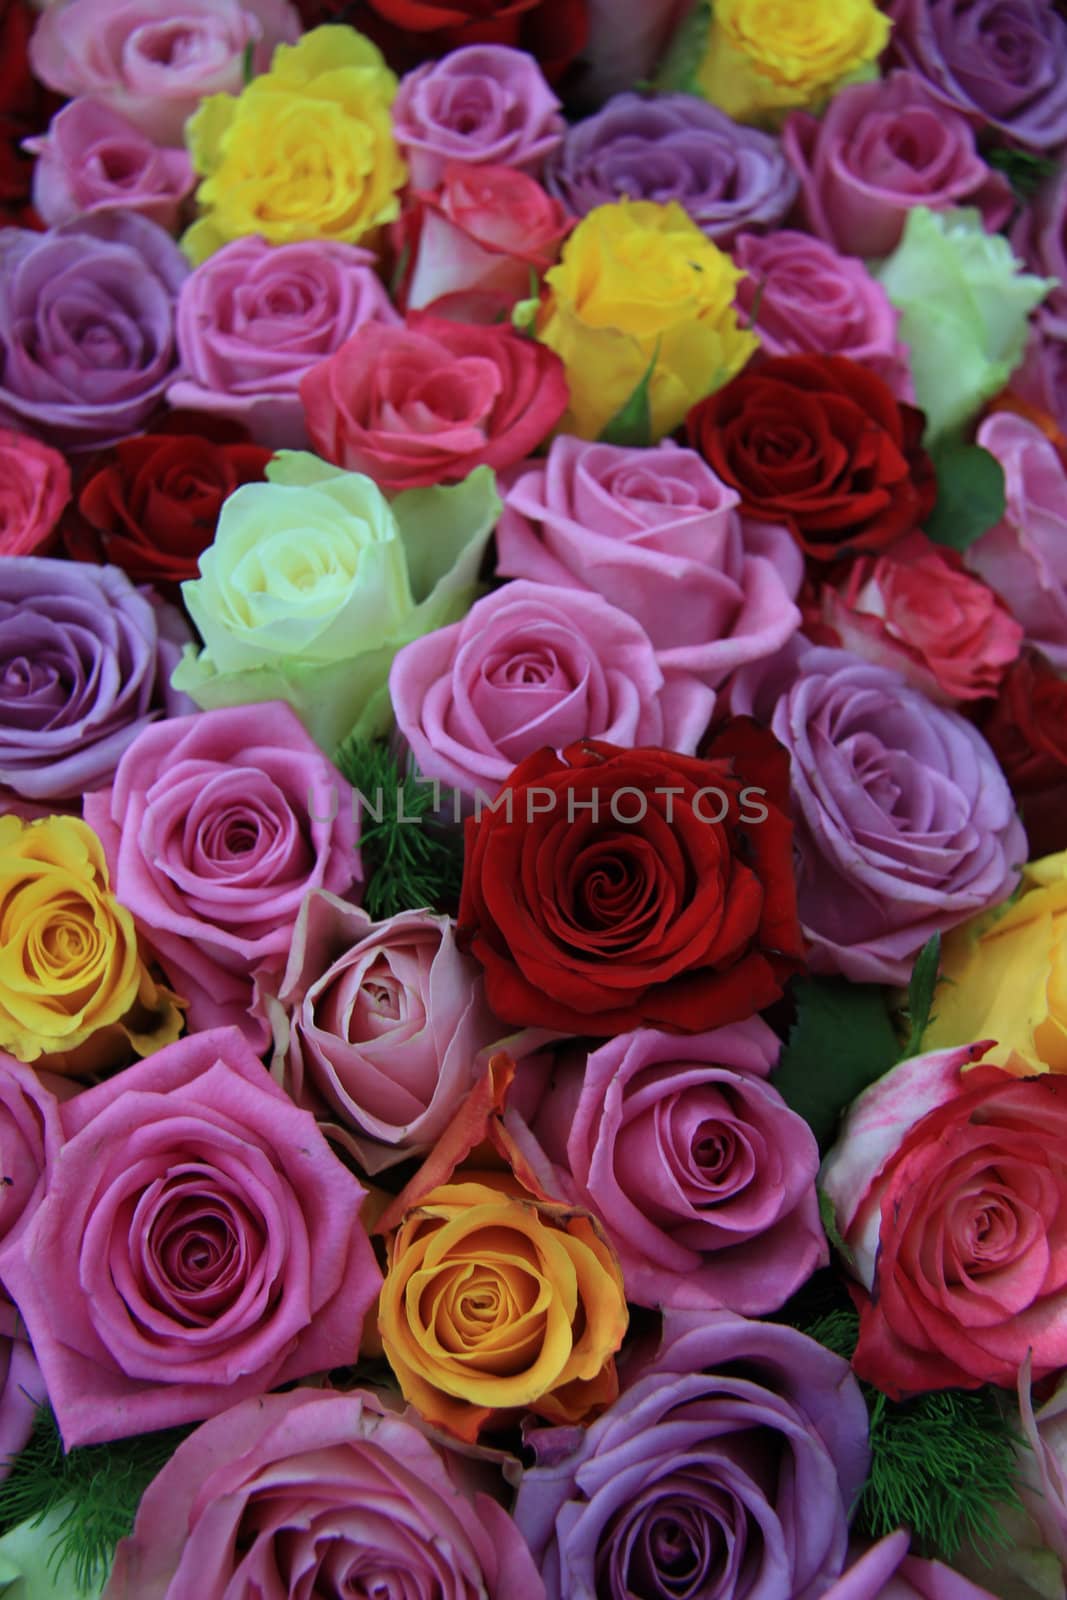 Mixed roses by studioportosabbia